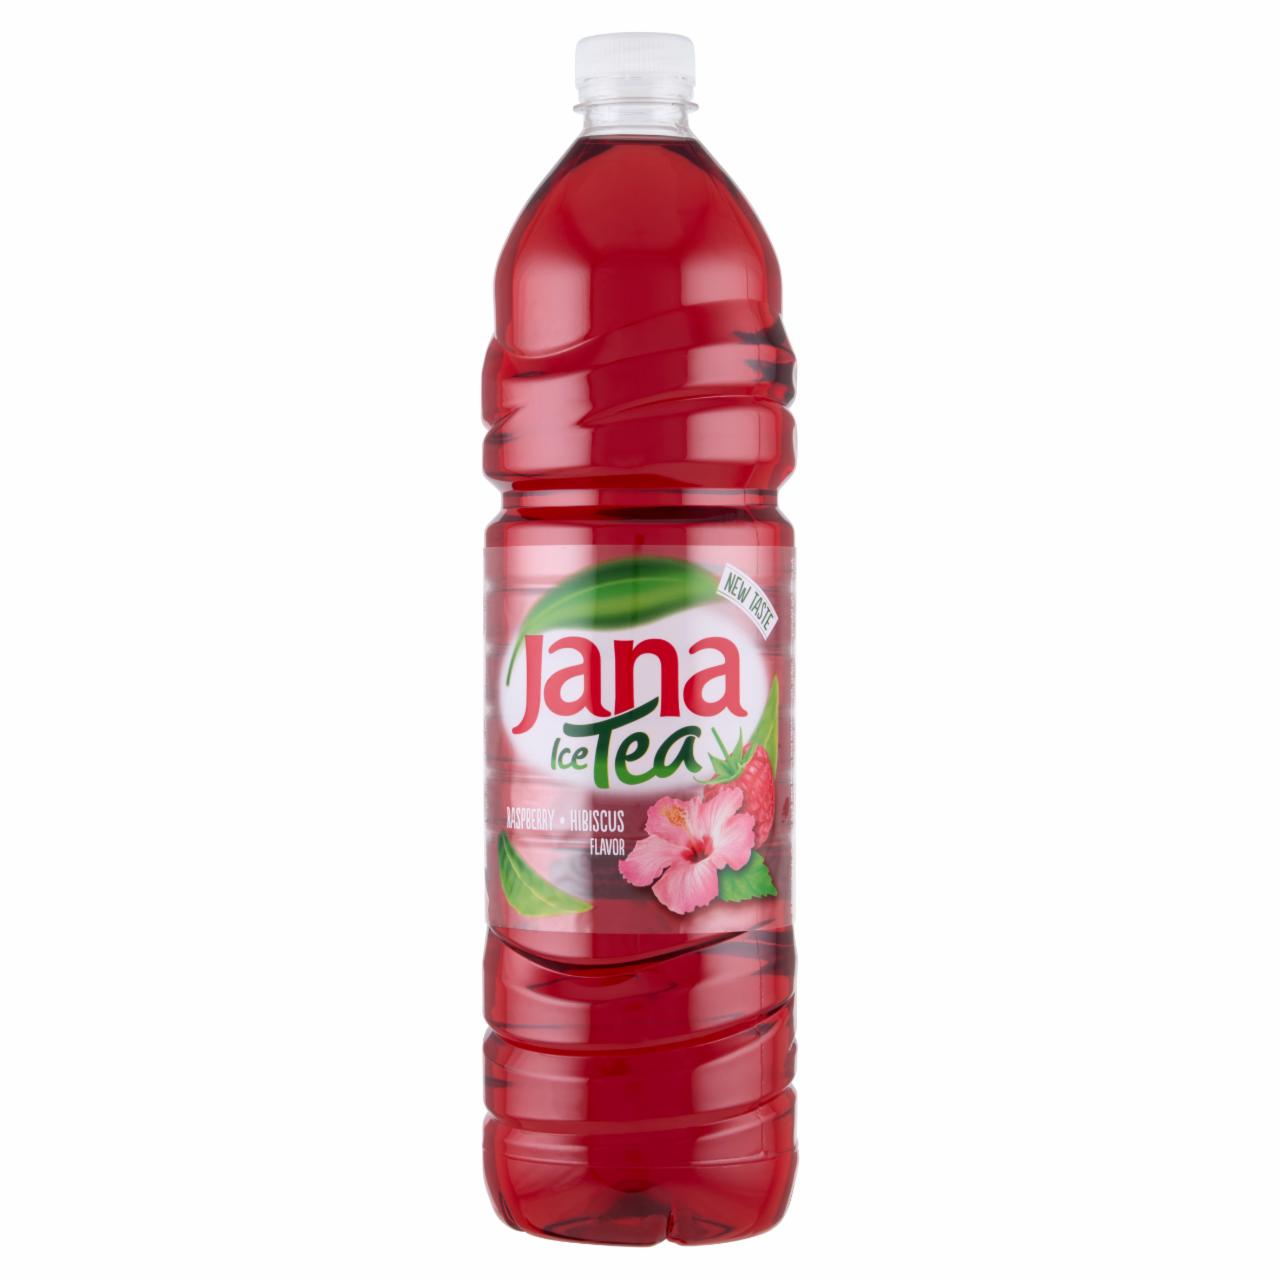 Képek - Jana Ice Tea csökkentett energiataralmú szénsavmentes málna-hibiszkusz ízesítésű üdítőital 6 x 1,5 l